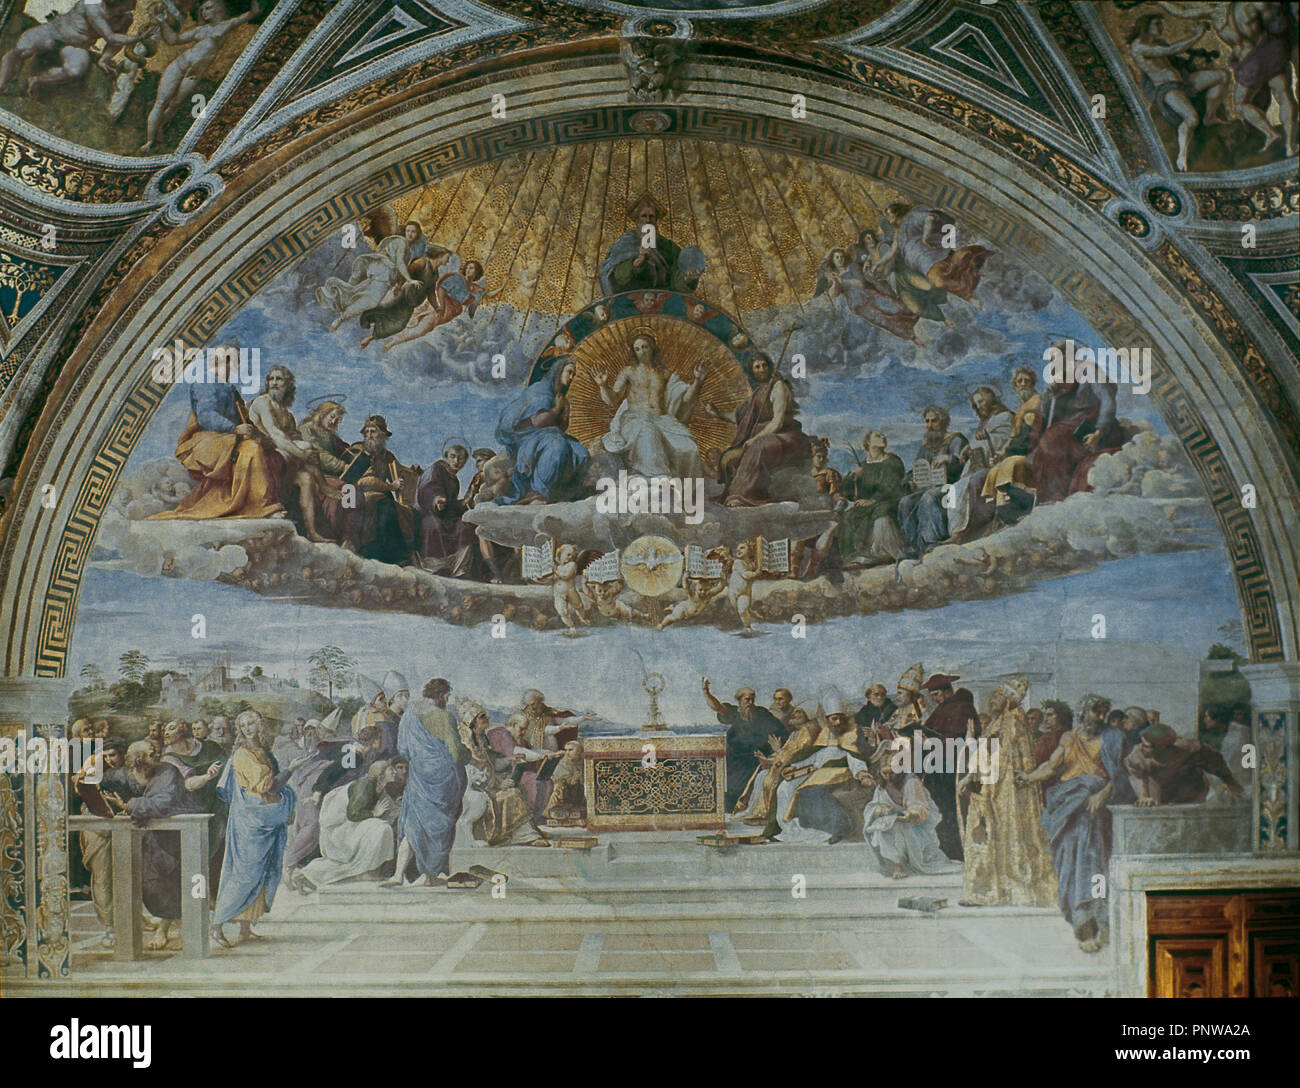 Disputa, from the Stanza della Segnatura - 1509 - fresco. Author: RAPHAEL. Location: MUSEOS VATICANOS-ESTANCIA DEL SELLO. VATICANO. Stock Photo